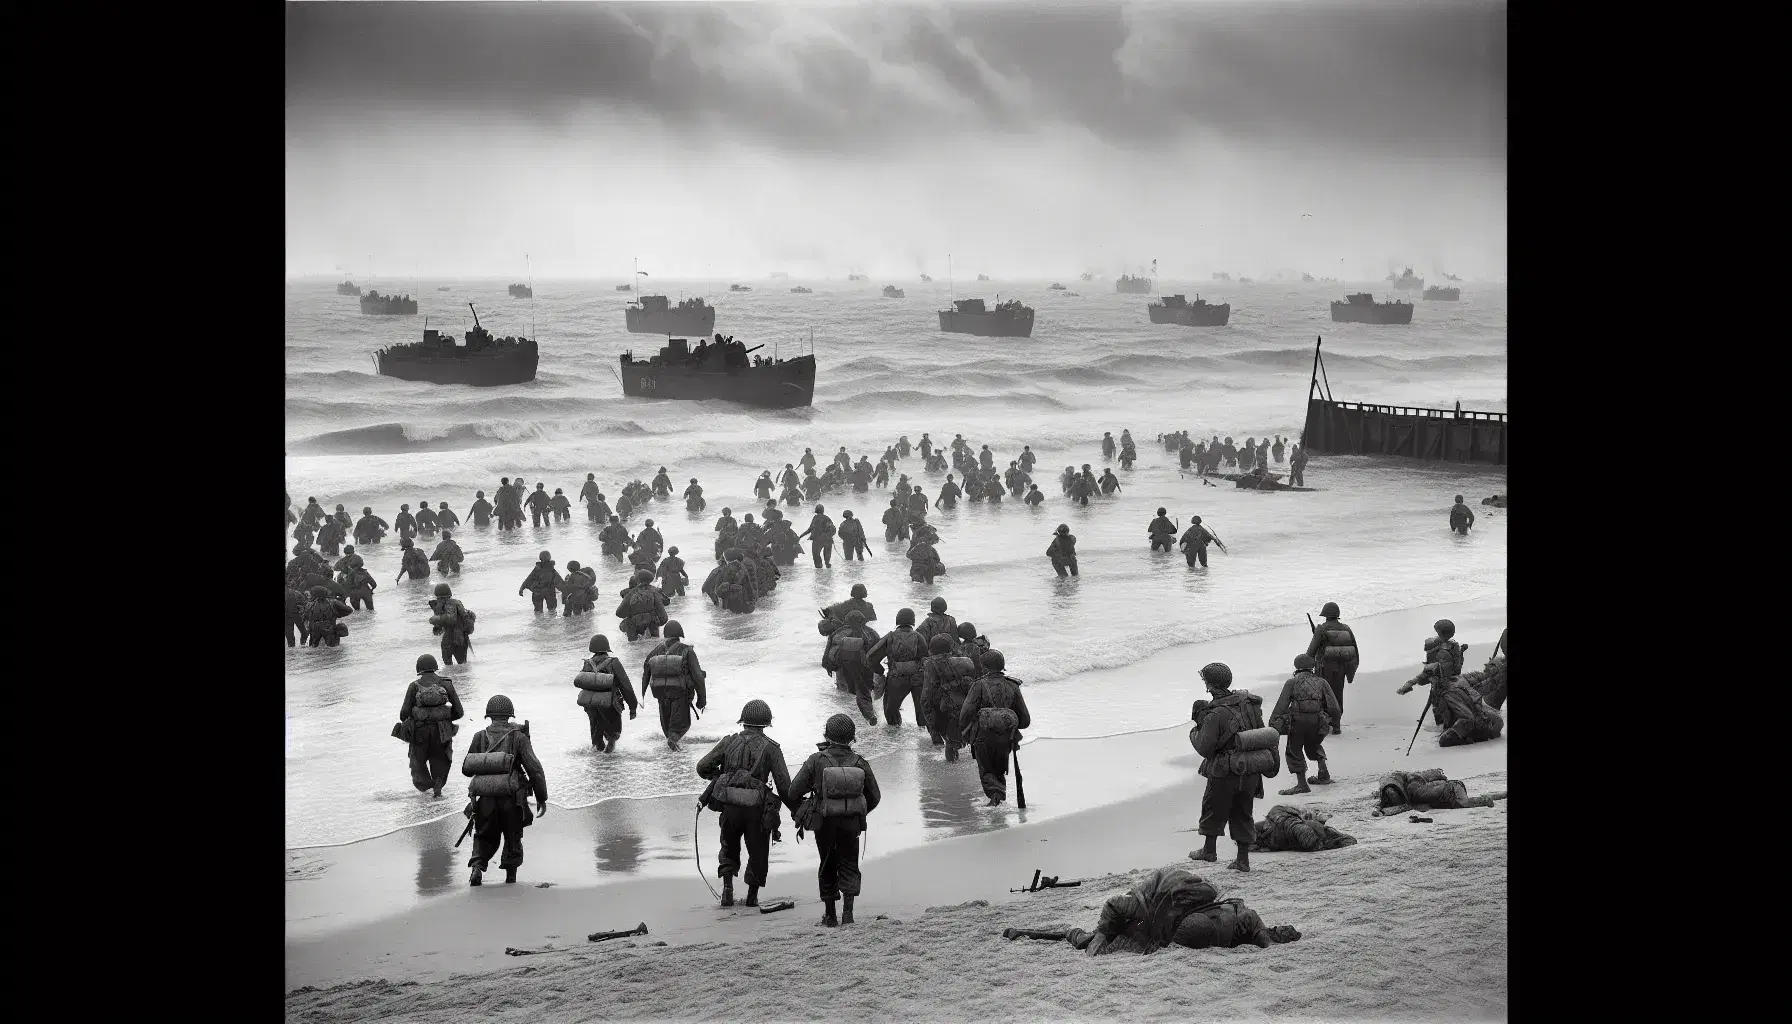 Soldati in uniforme avanzano su una spiaggia della Normandia durante lo sbarco in WWII, con mezzi da sbarco e onde agitate.